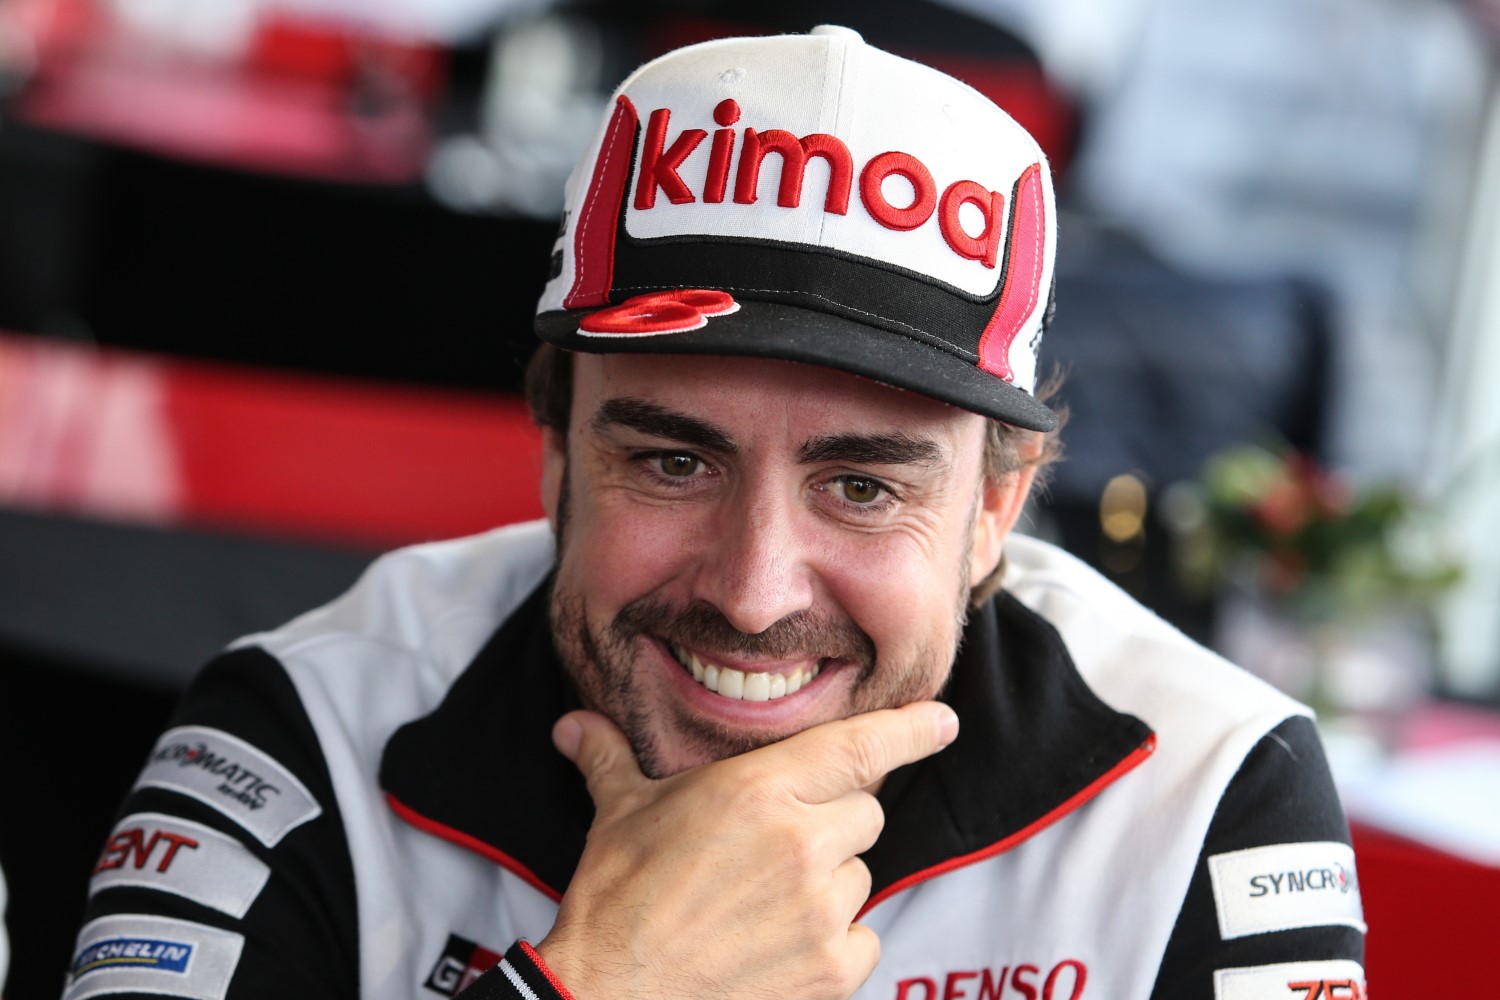 Alonso calls the Hamilton/Rossi ride swap a marketing stunt